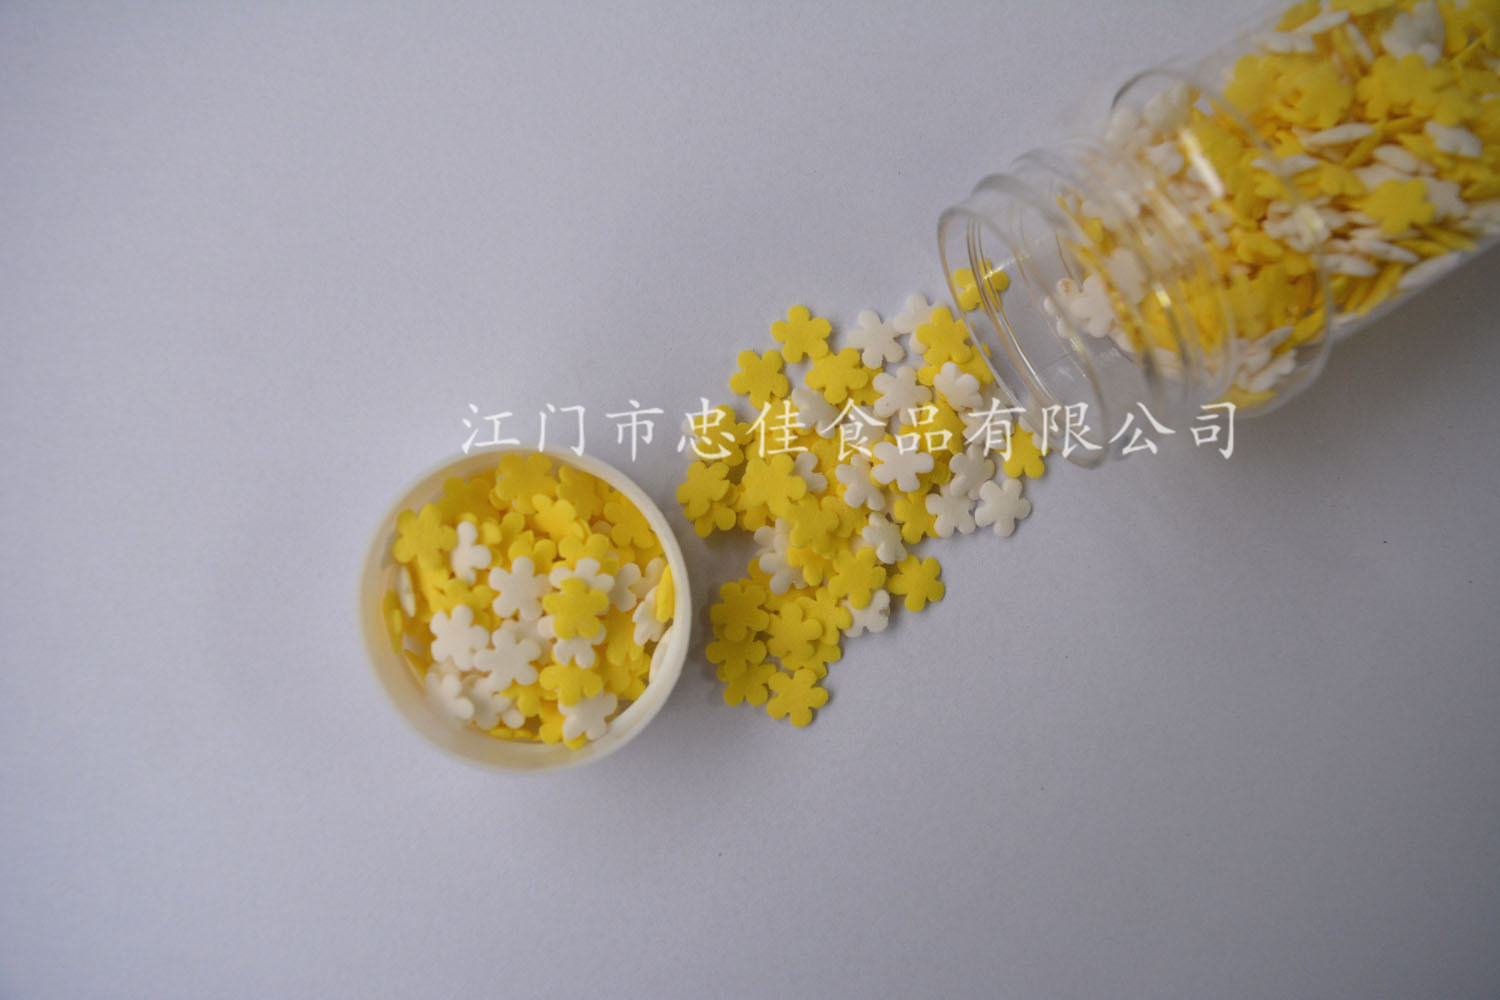 花朵形状切片糖 sprinkles in bulk for dessert decoration flower shape